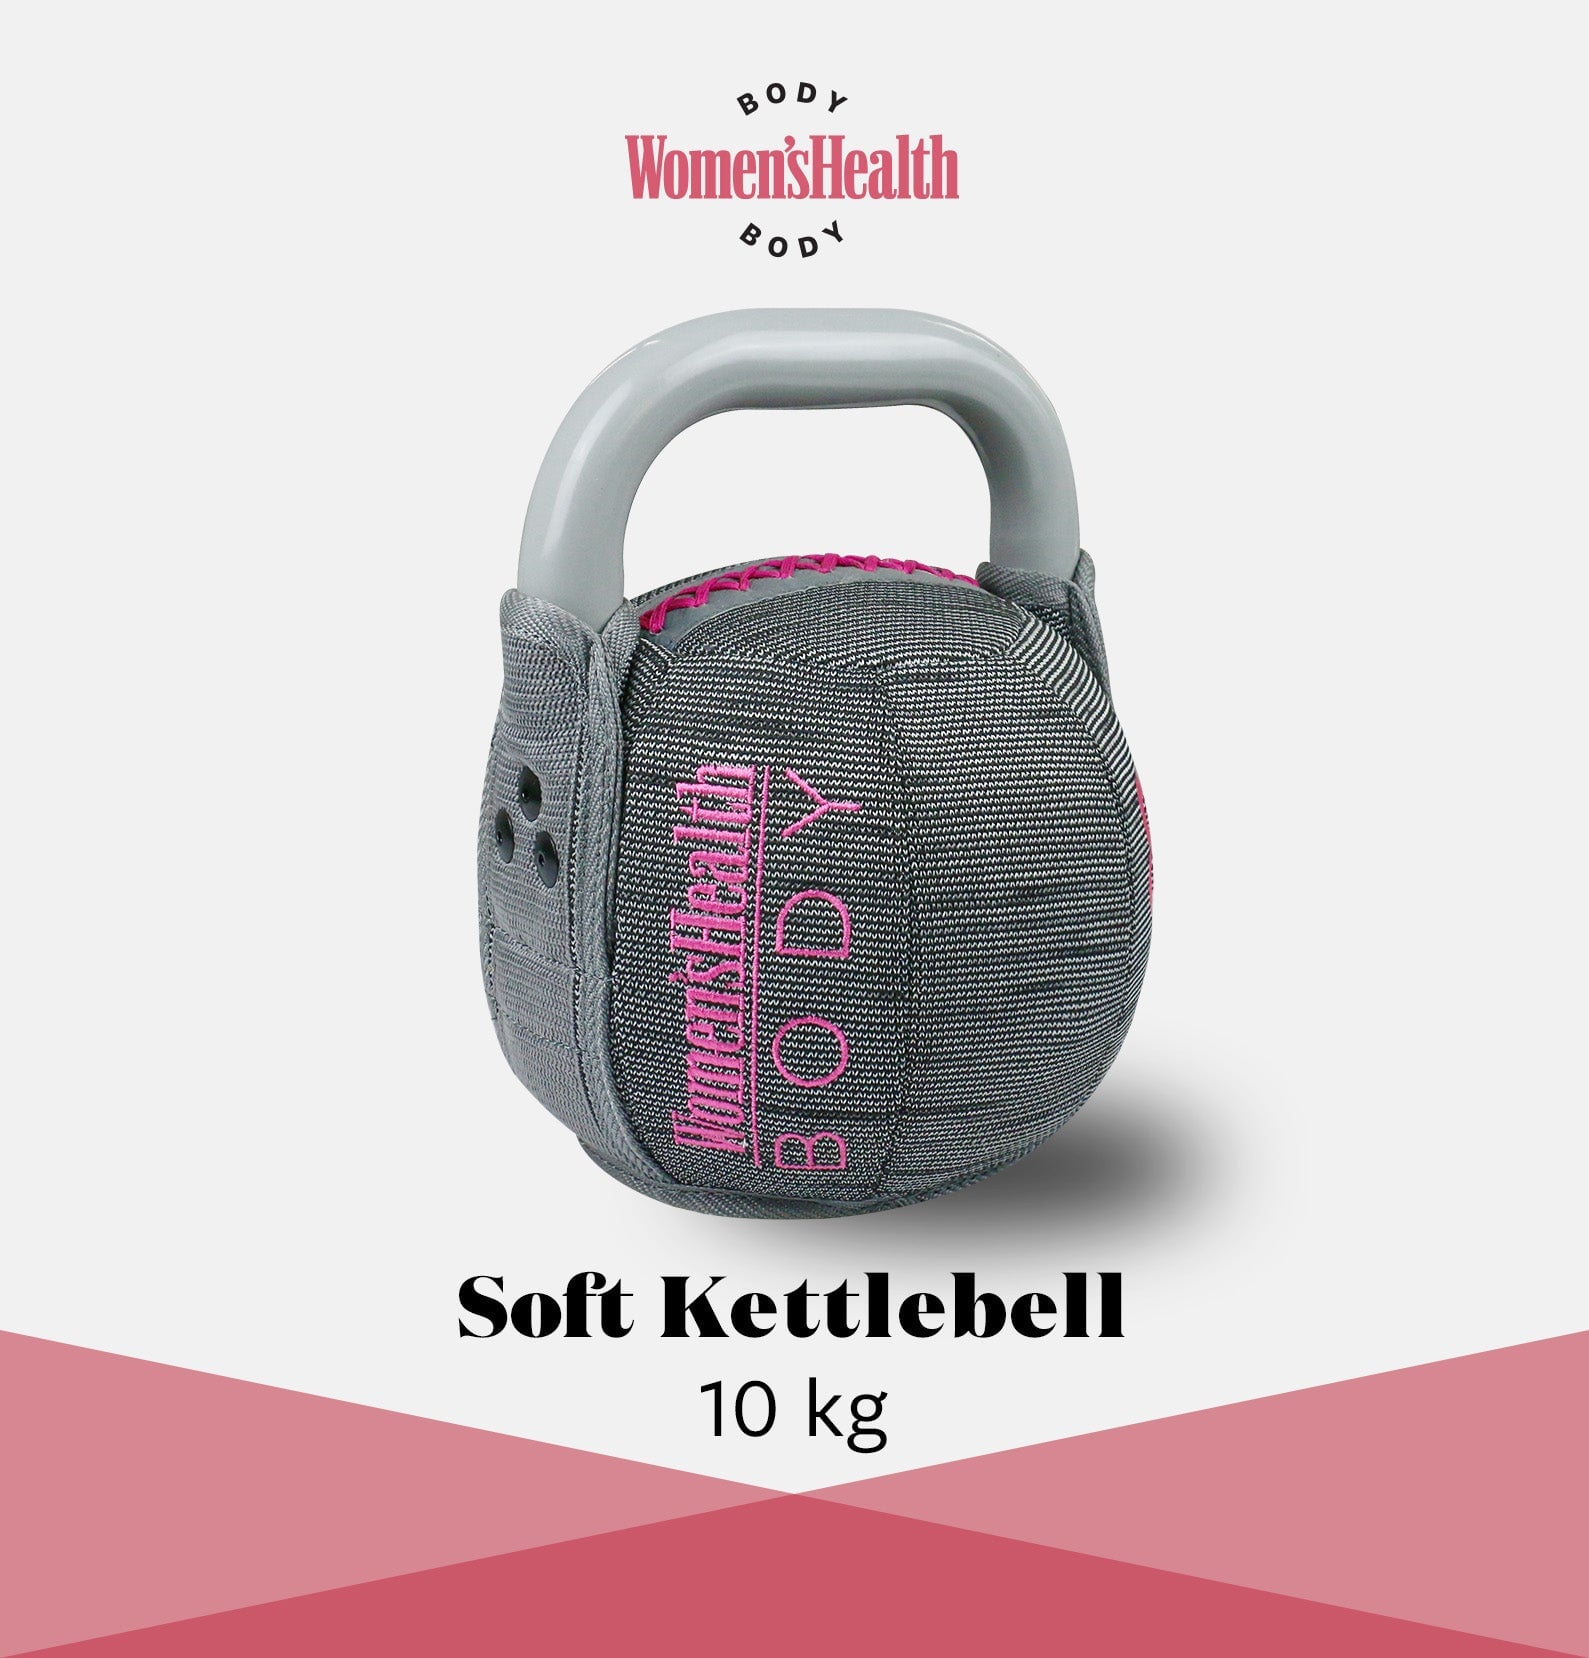 Soft Kettlebell 10kg Variante, mit Textilüberzug